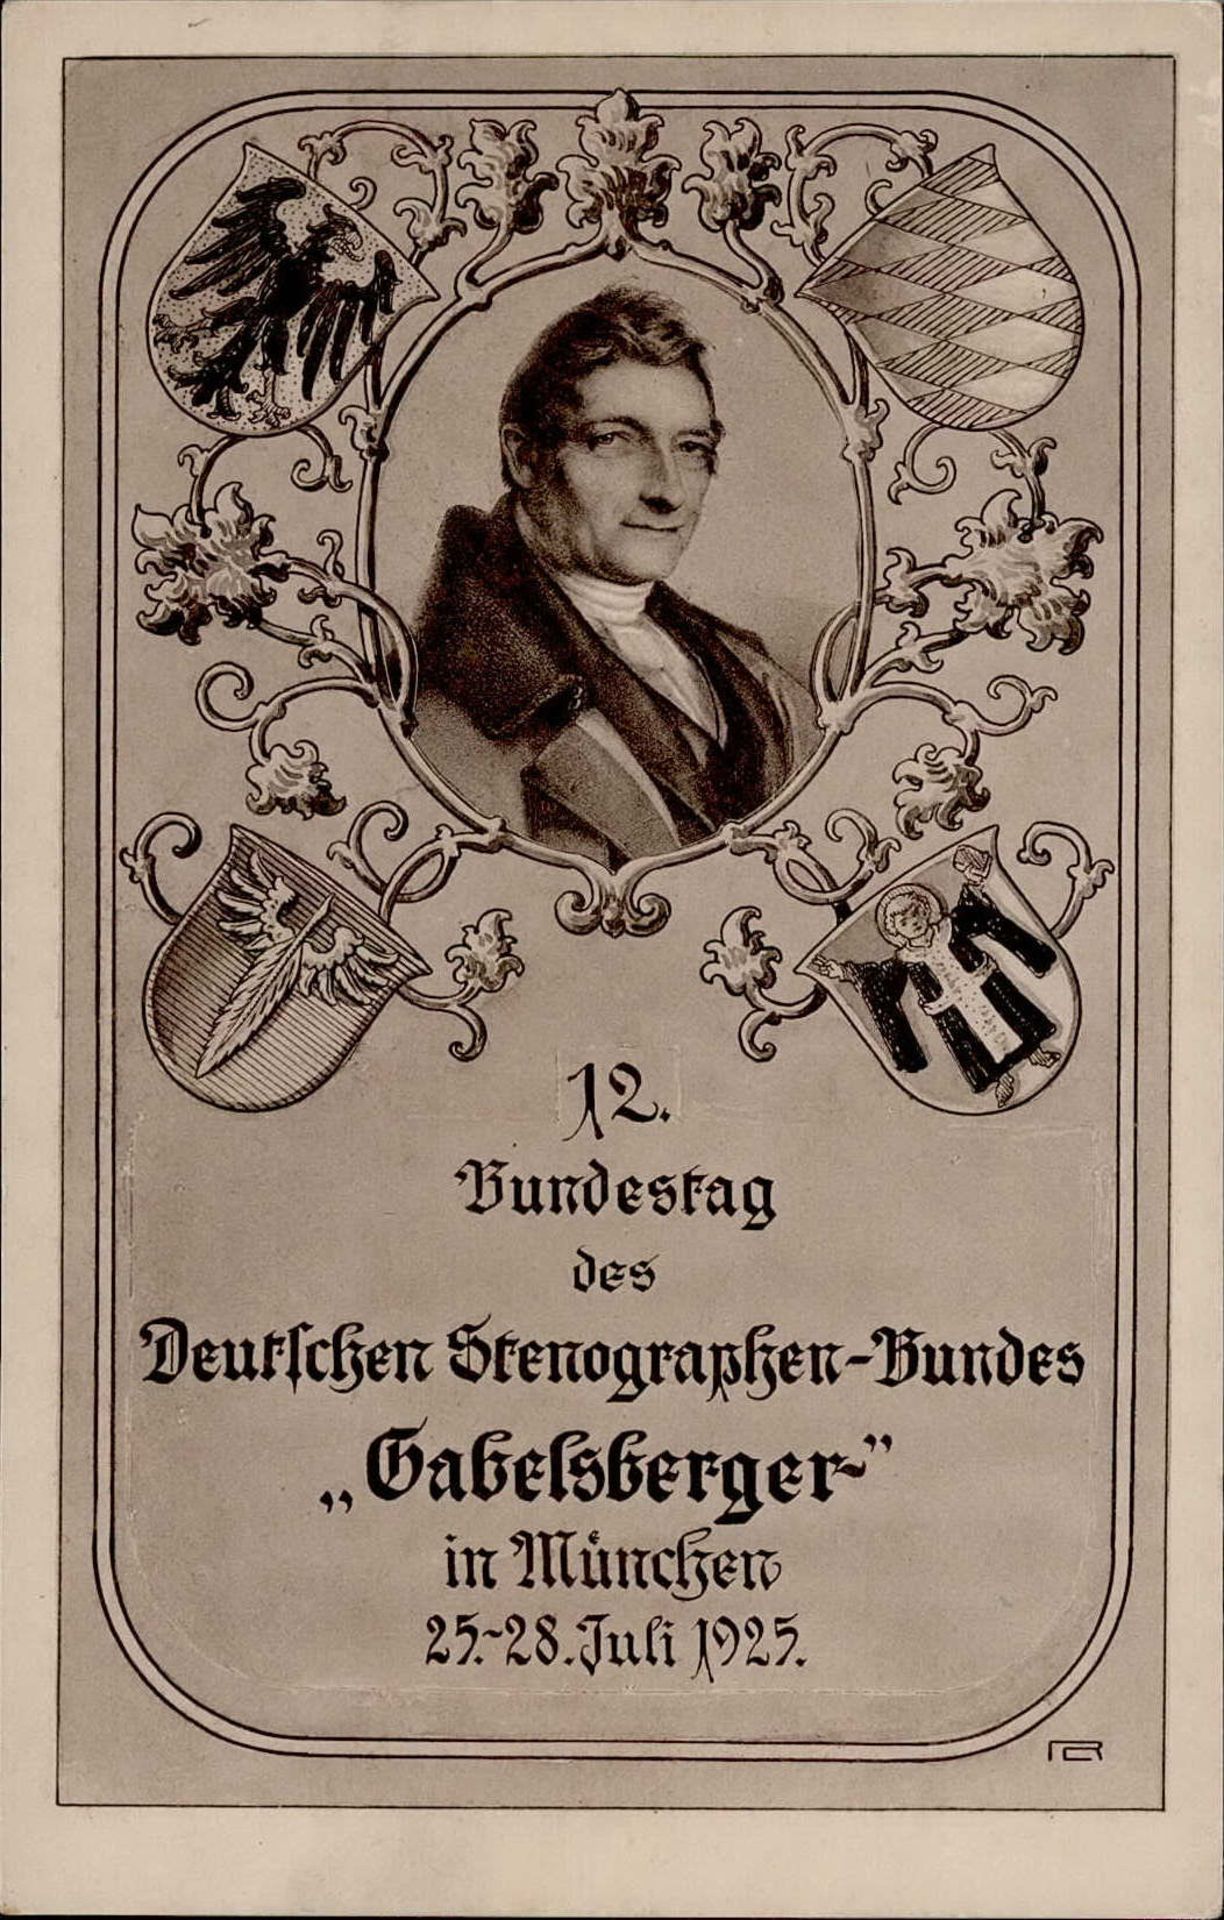 Stenographie München 12. Bundestag des Deutschen Stenographen-Bundes Gabelsberger 1925 I-II